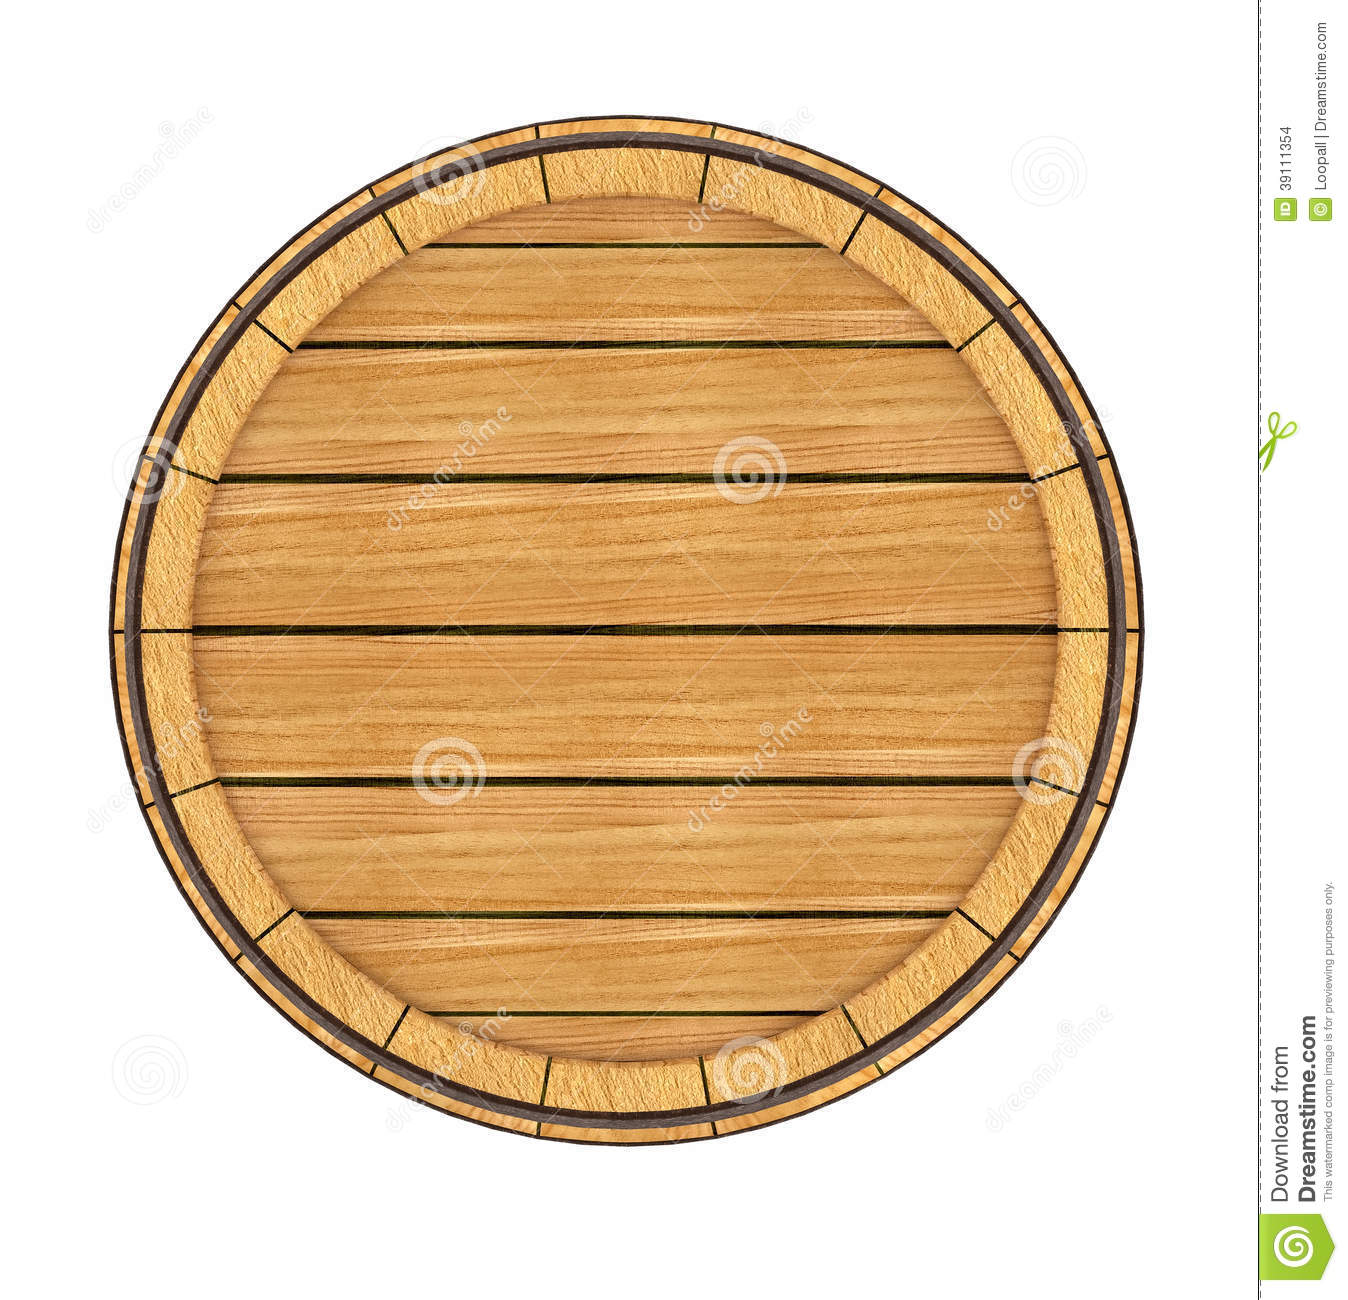 whiskey barrel: old barrel (w